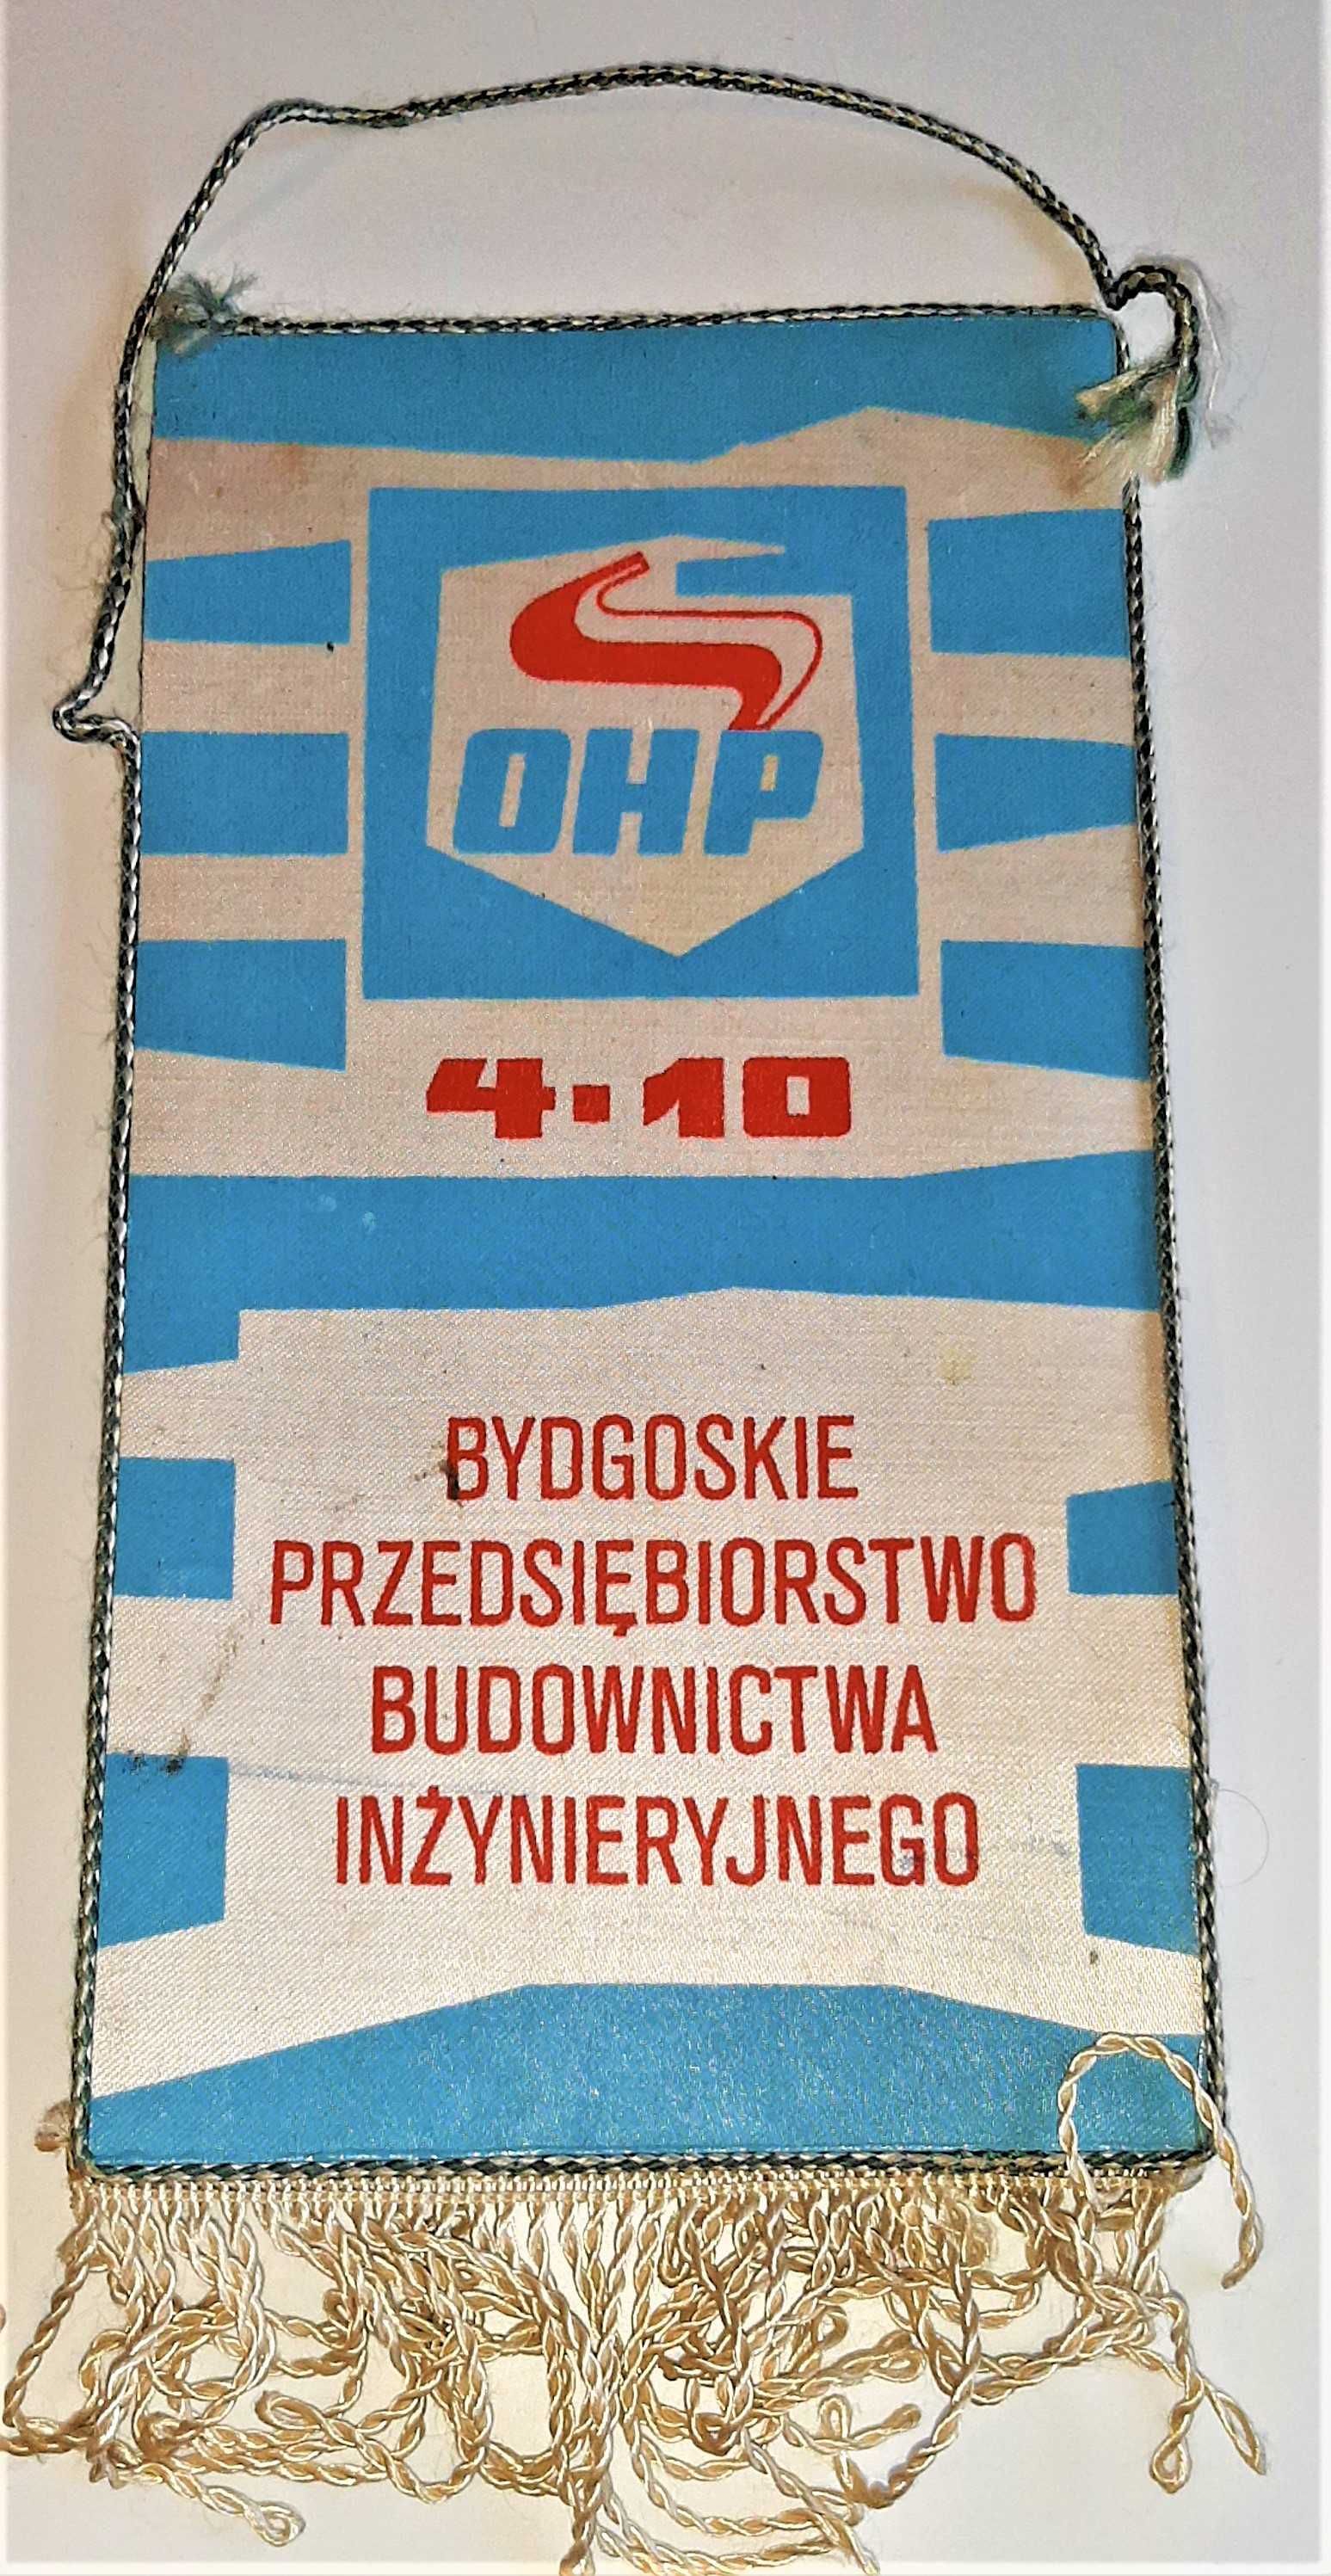 Proporczyk OHP Bydgoszcz Bydgoskie Przedsiębiorstwo Budownictwa Inżyni